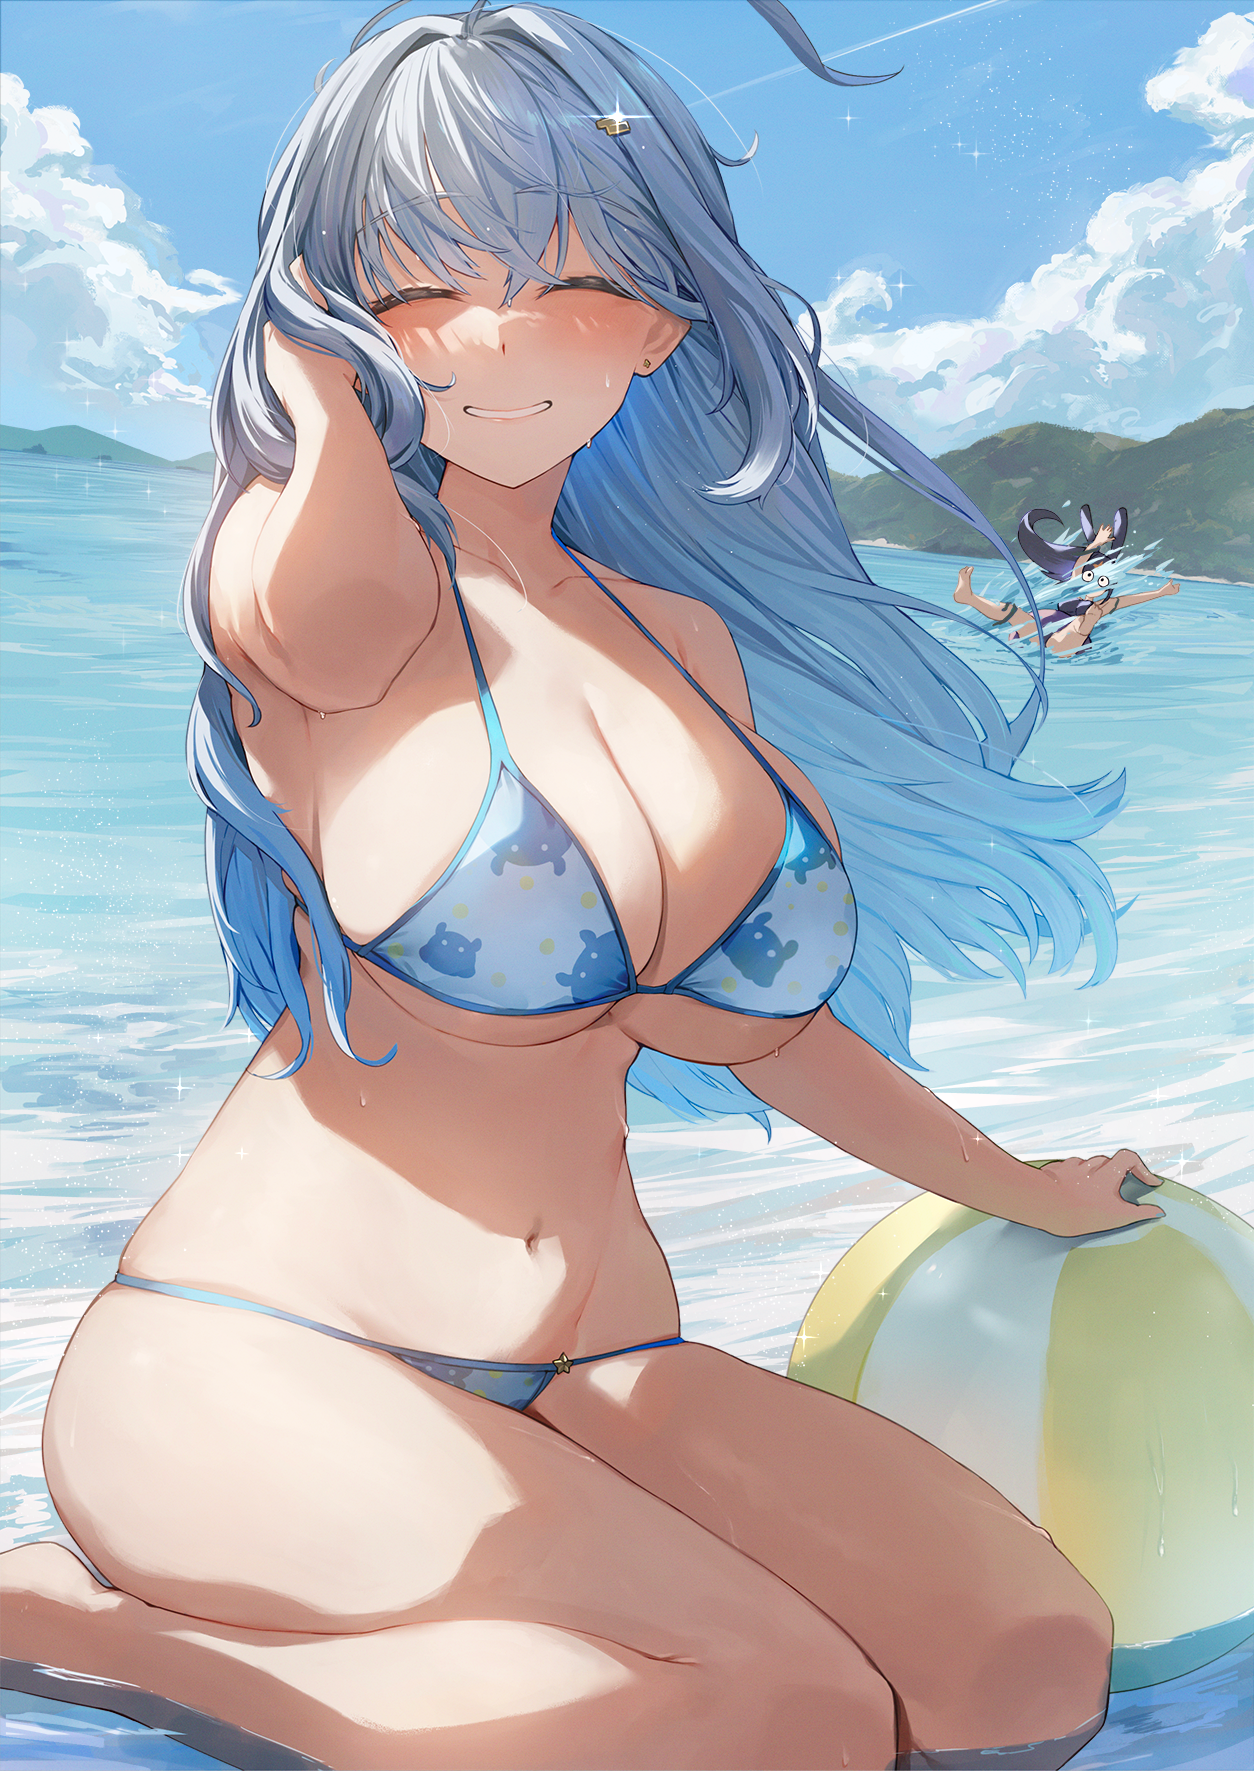 Anime 1254x1771 Neshia anime girls blue hair bikini sky clouds sitting big boobs closed eyes beach ball water huge breasts